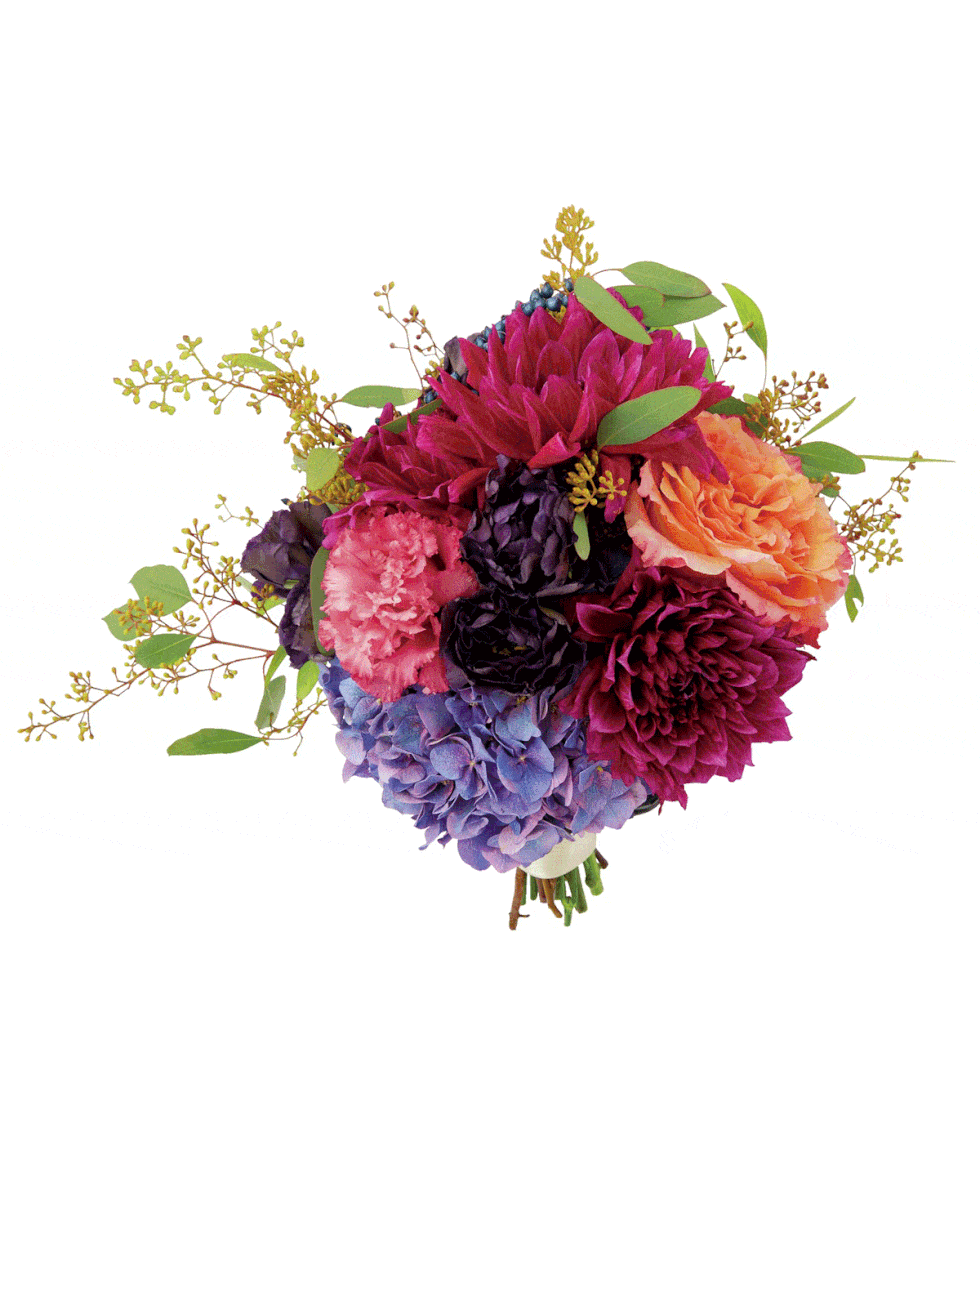 Petal, Flower, Cut flowers, Purple, Floristry, Botany, Flower Arranging, Bouquet, Floral design, Flowering plant, 